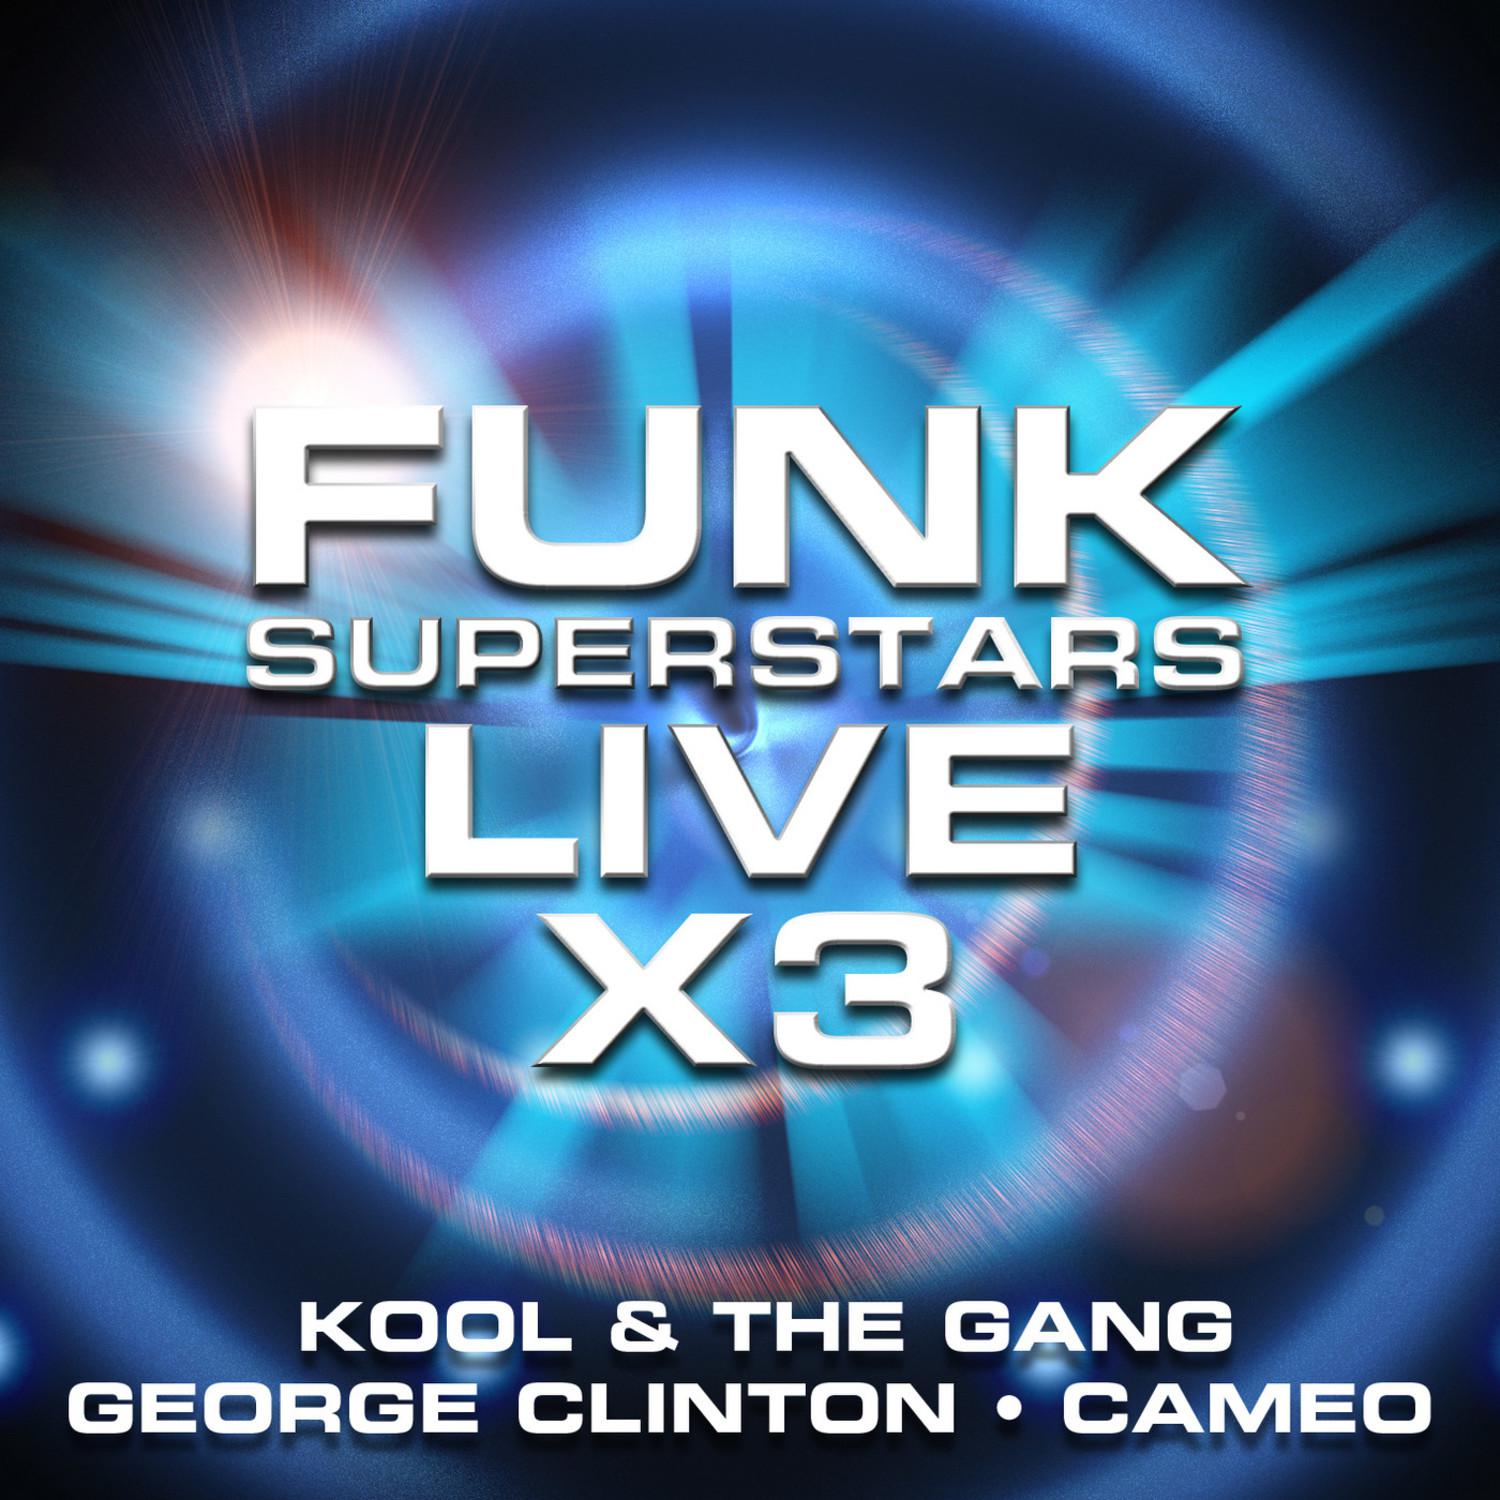 Funk Superstars Live x 3